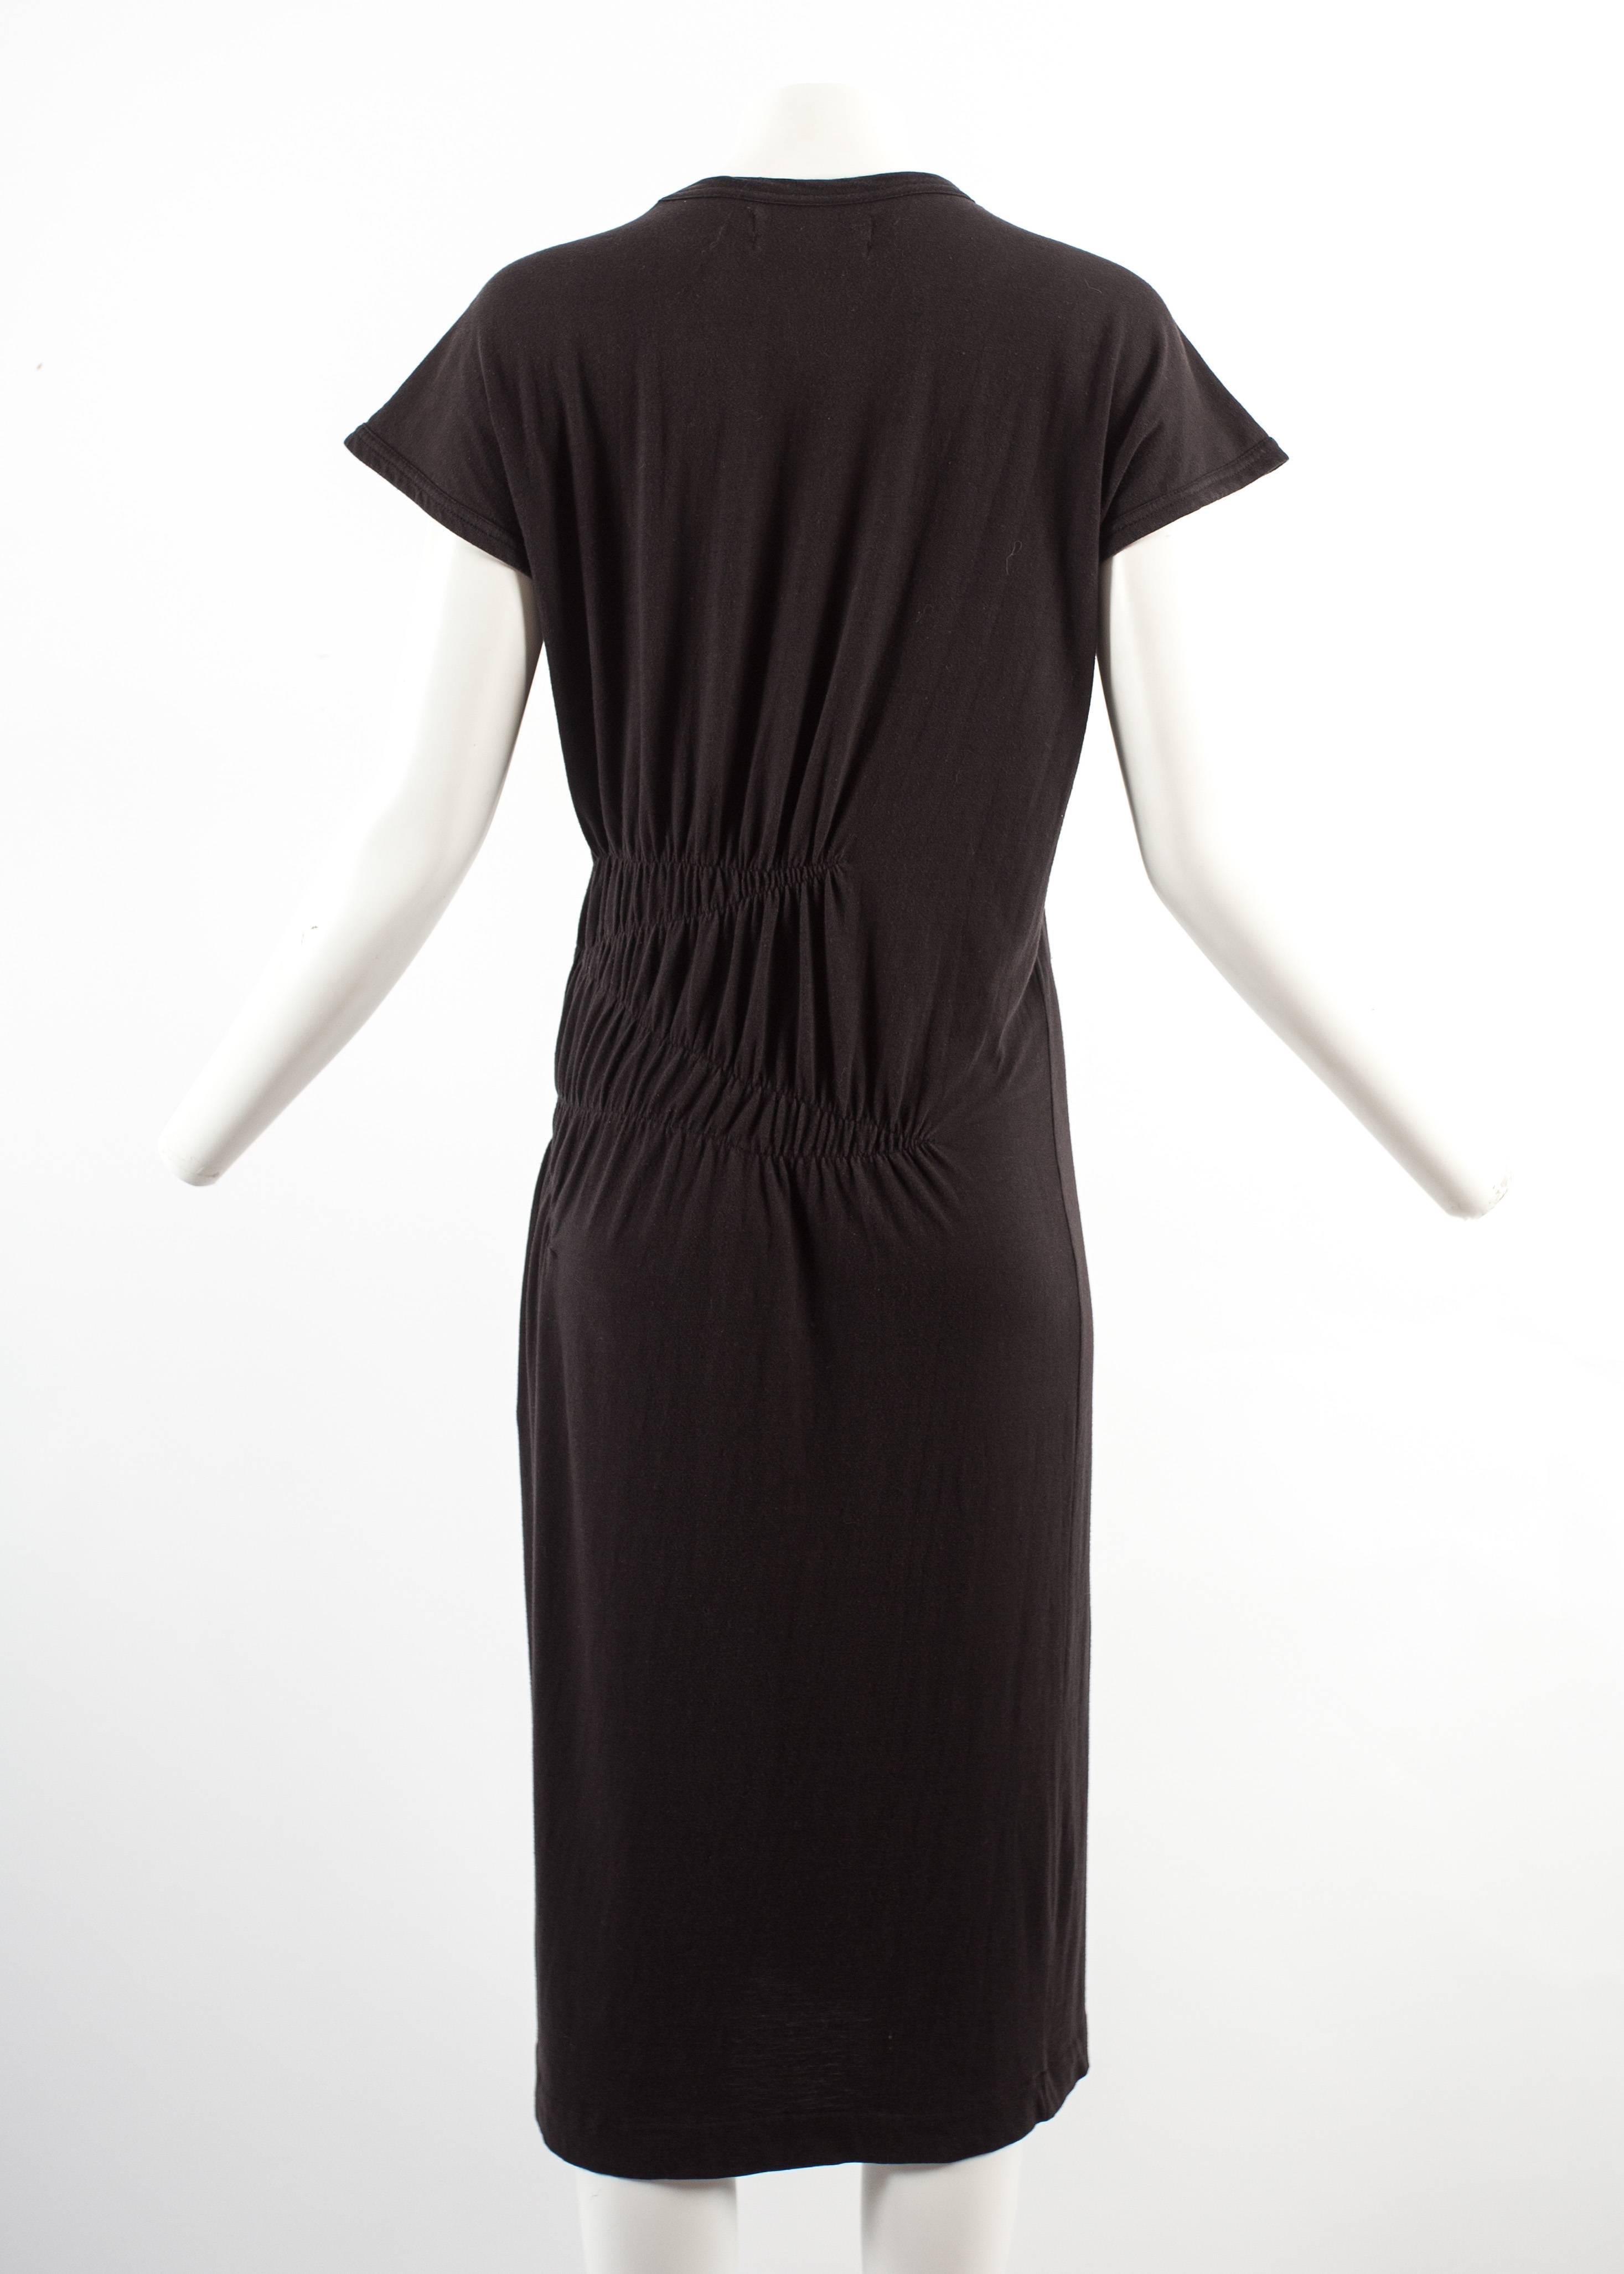 Comme des Garcons 1983-84 black cotton smocked dress For Sale at ...